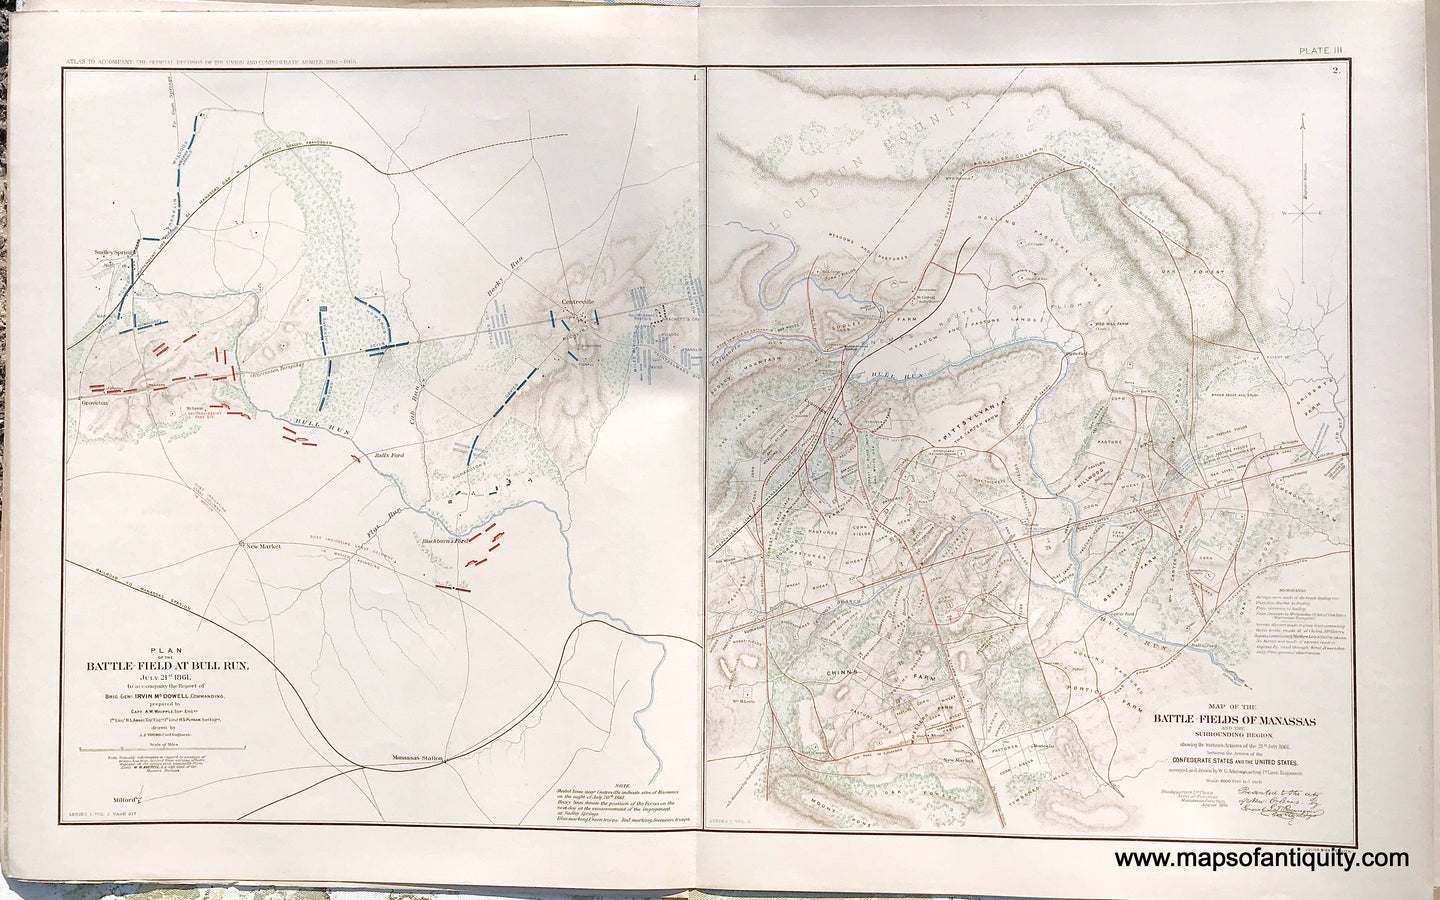 Antique-Lithograph-Print-Plate-3.-Battle-Field-at-Bull-Run-July-21st-1861-/-Battle-Fields-of-Manassas-July-21-1861-1891-US-War-Dept.-Civil-War-Civil-War-1800s-19th-century-Maps-of-Antiquity